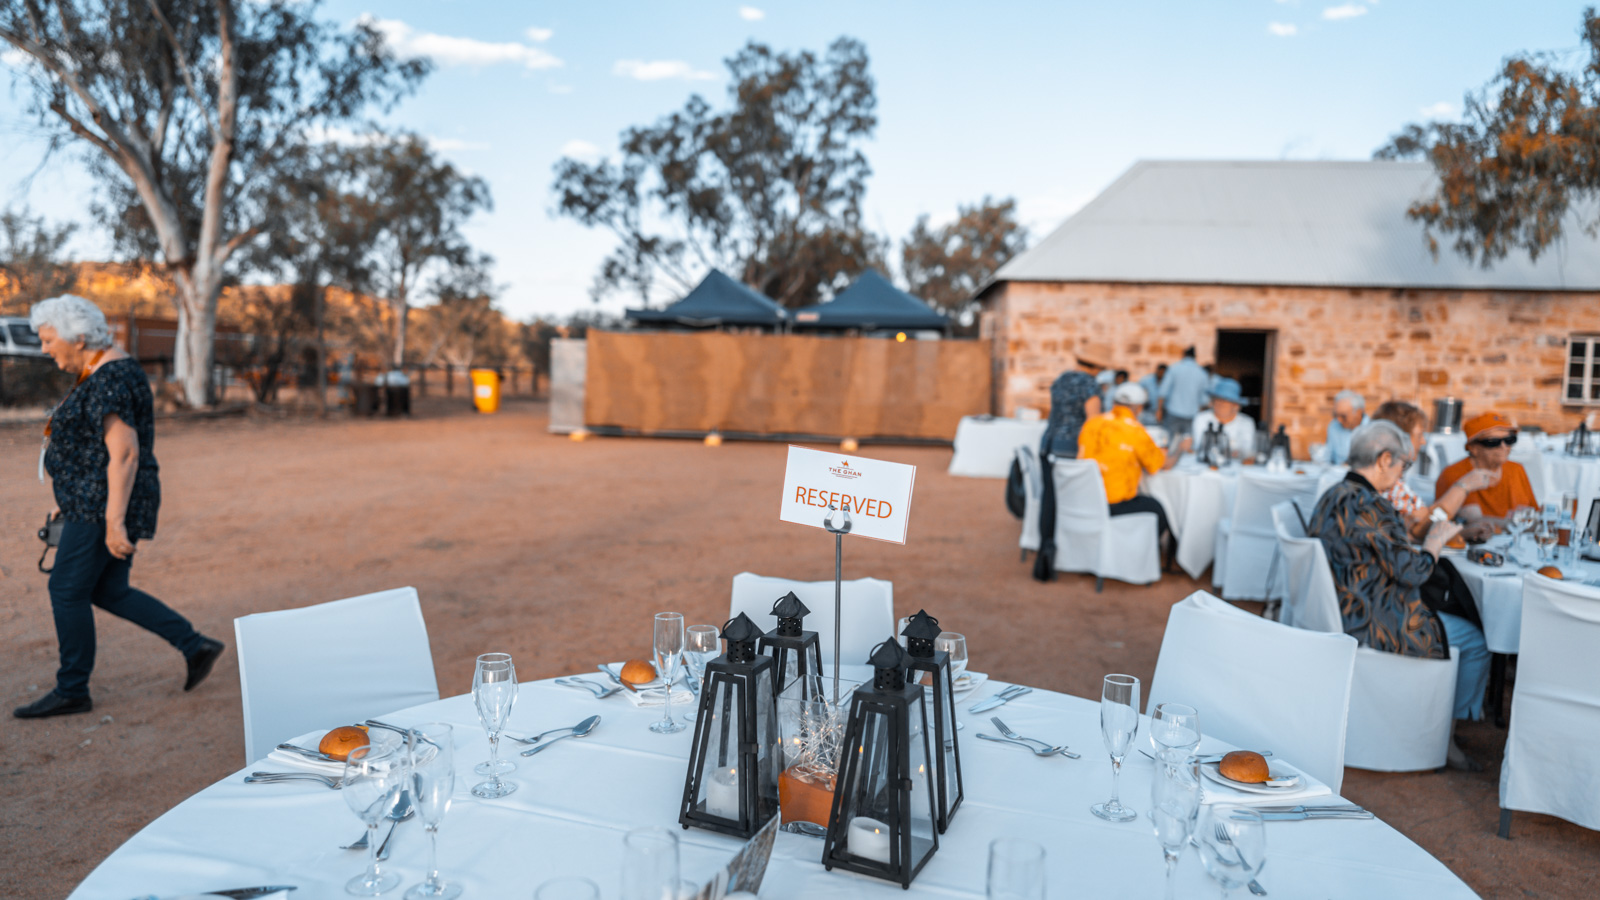 The Ghan Alice Springs dinner under the stars